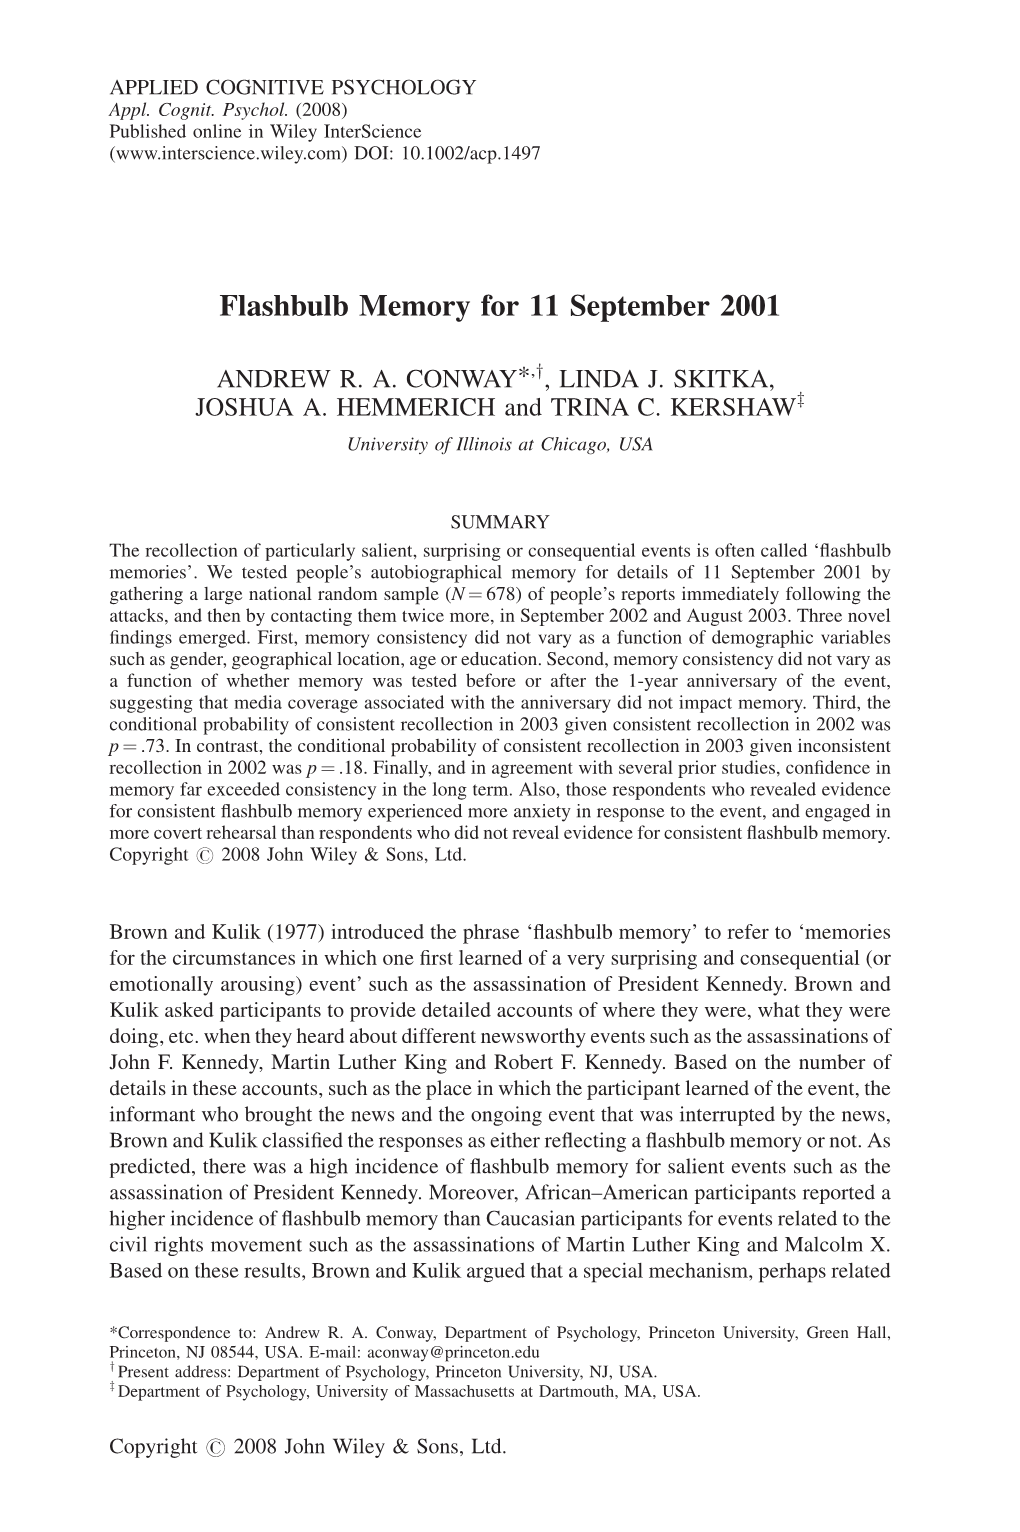 Flashbulb Memory for 11 September 2001